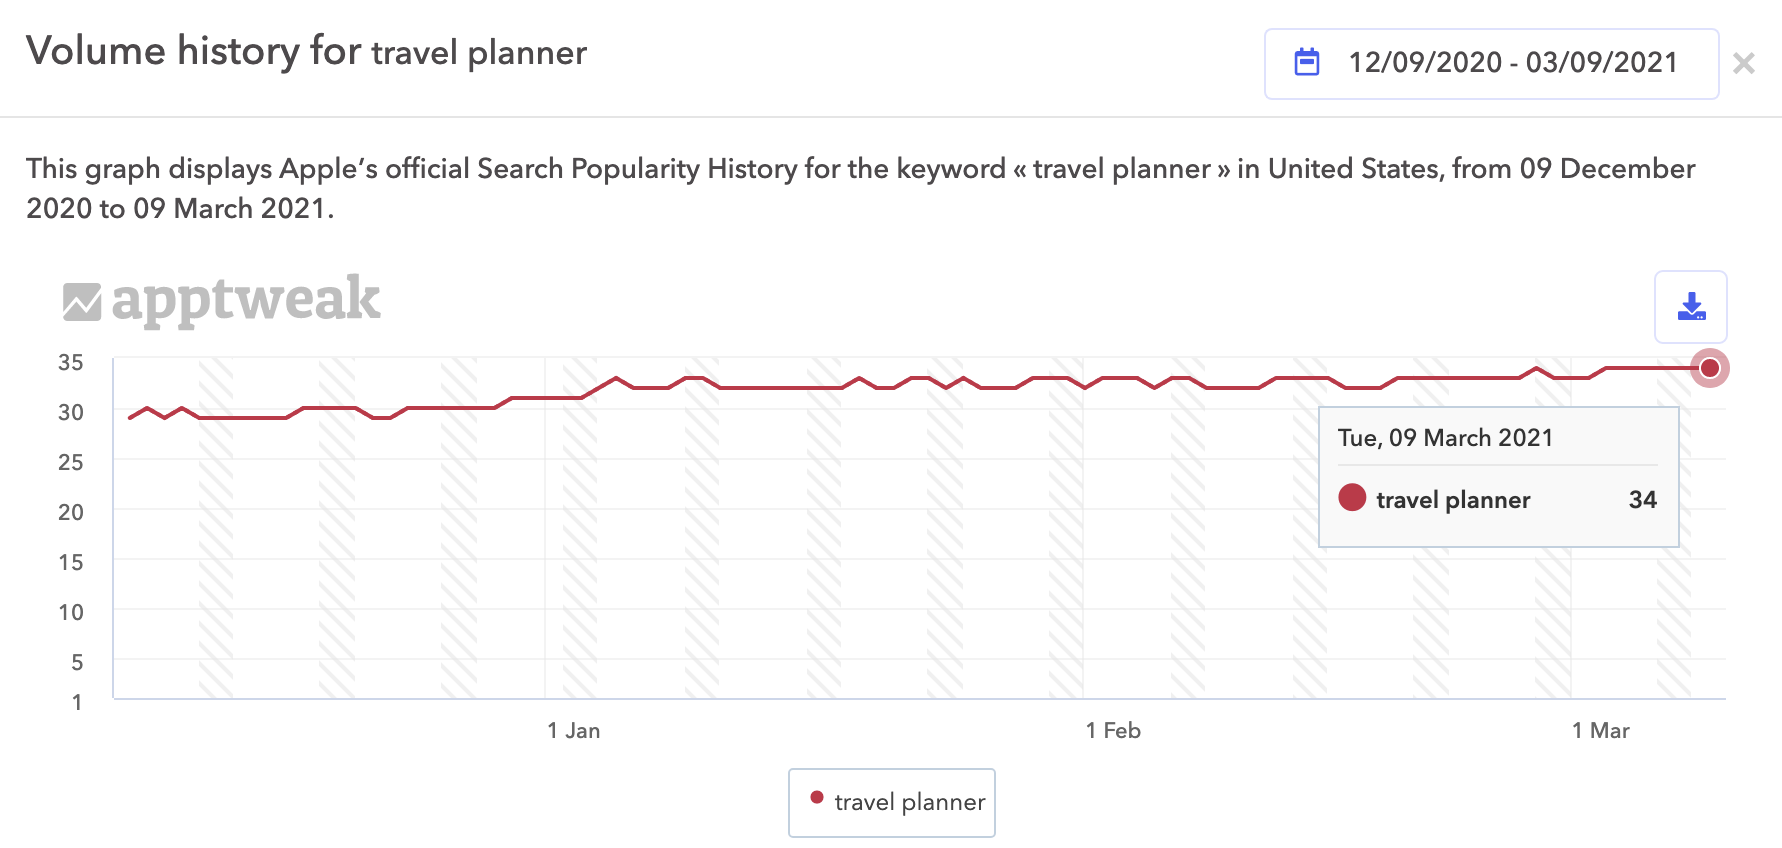 AppTweak ASO Tool - Volume history of the keyword "Travel planner"